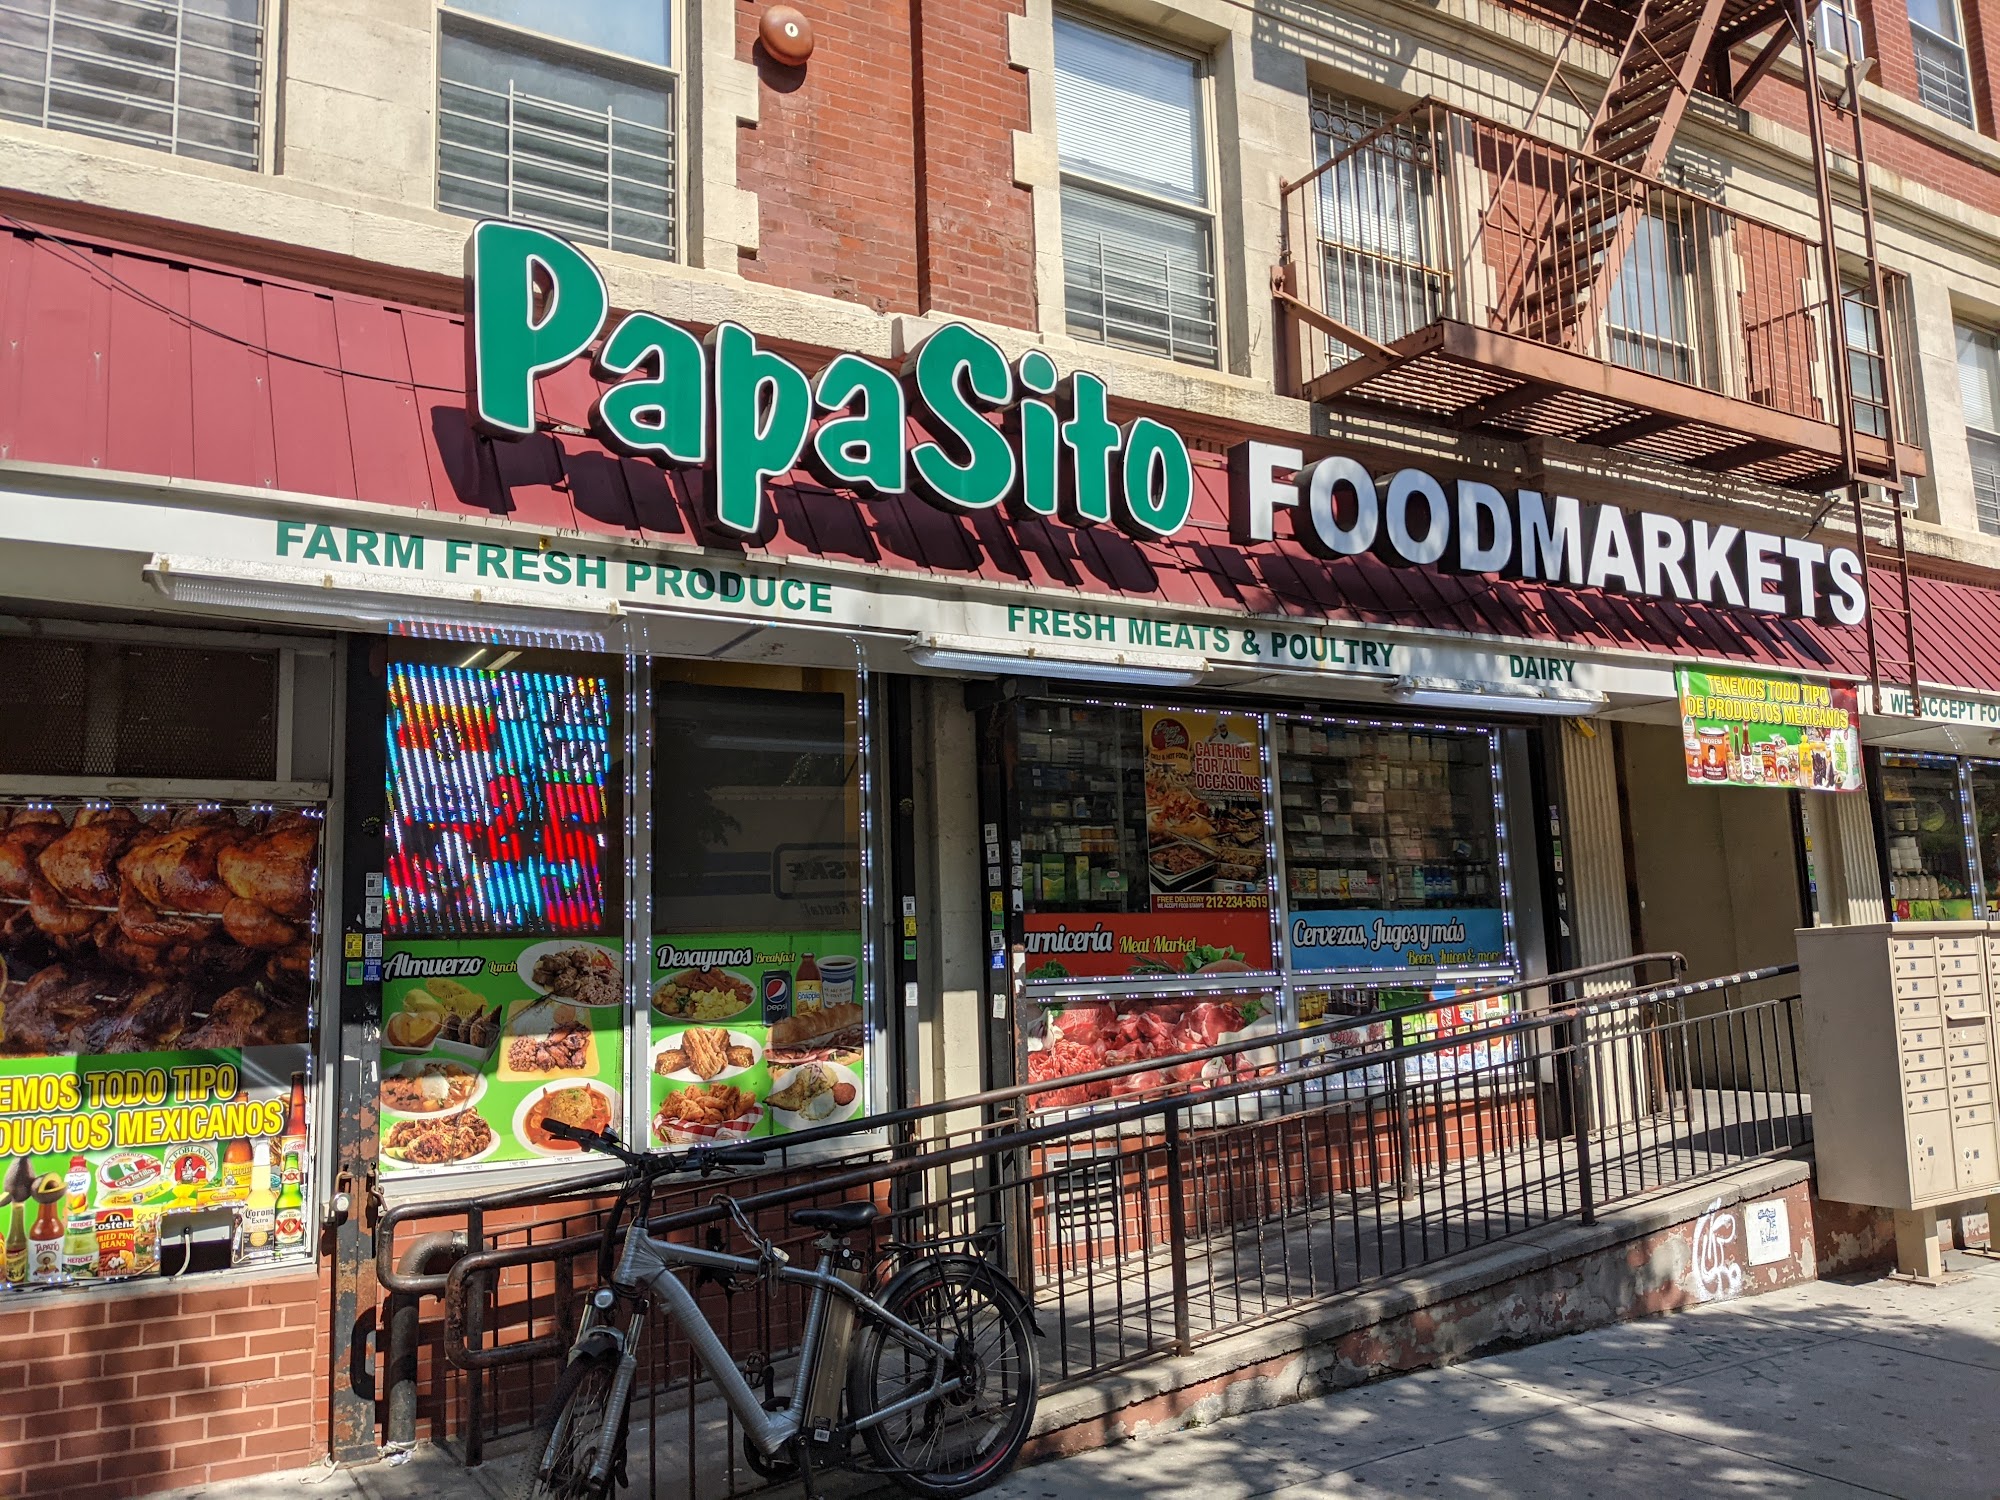 PapaSito Foodmarkets